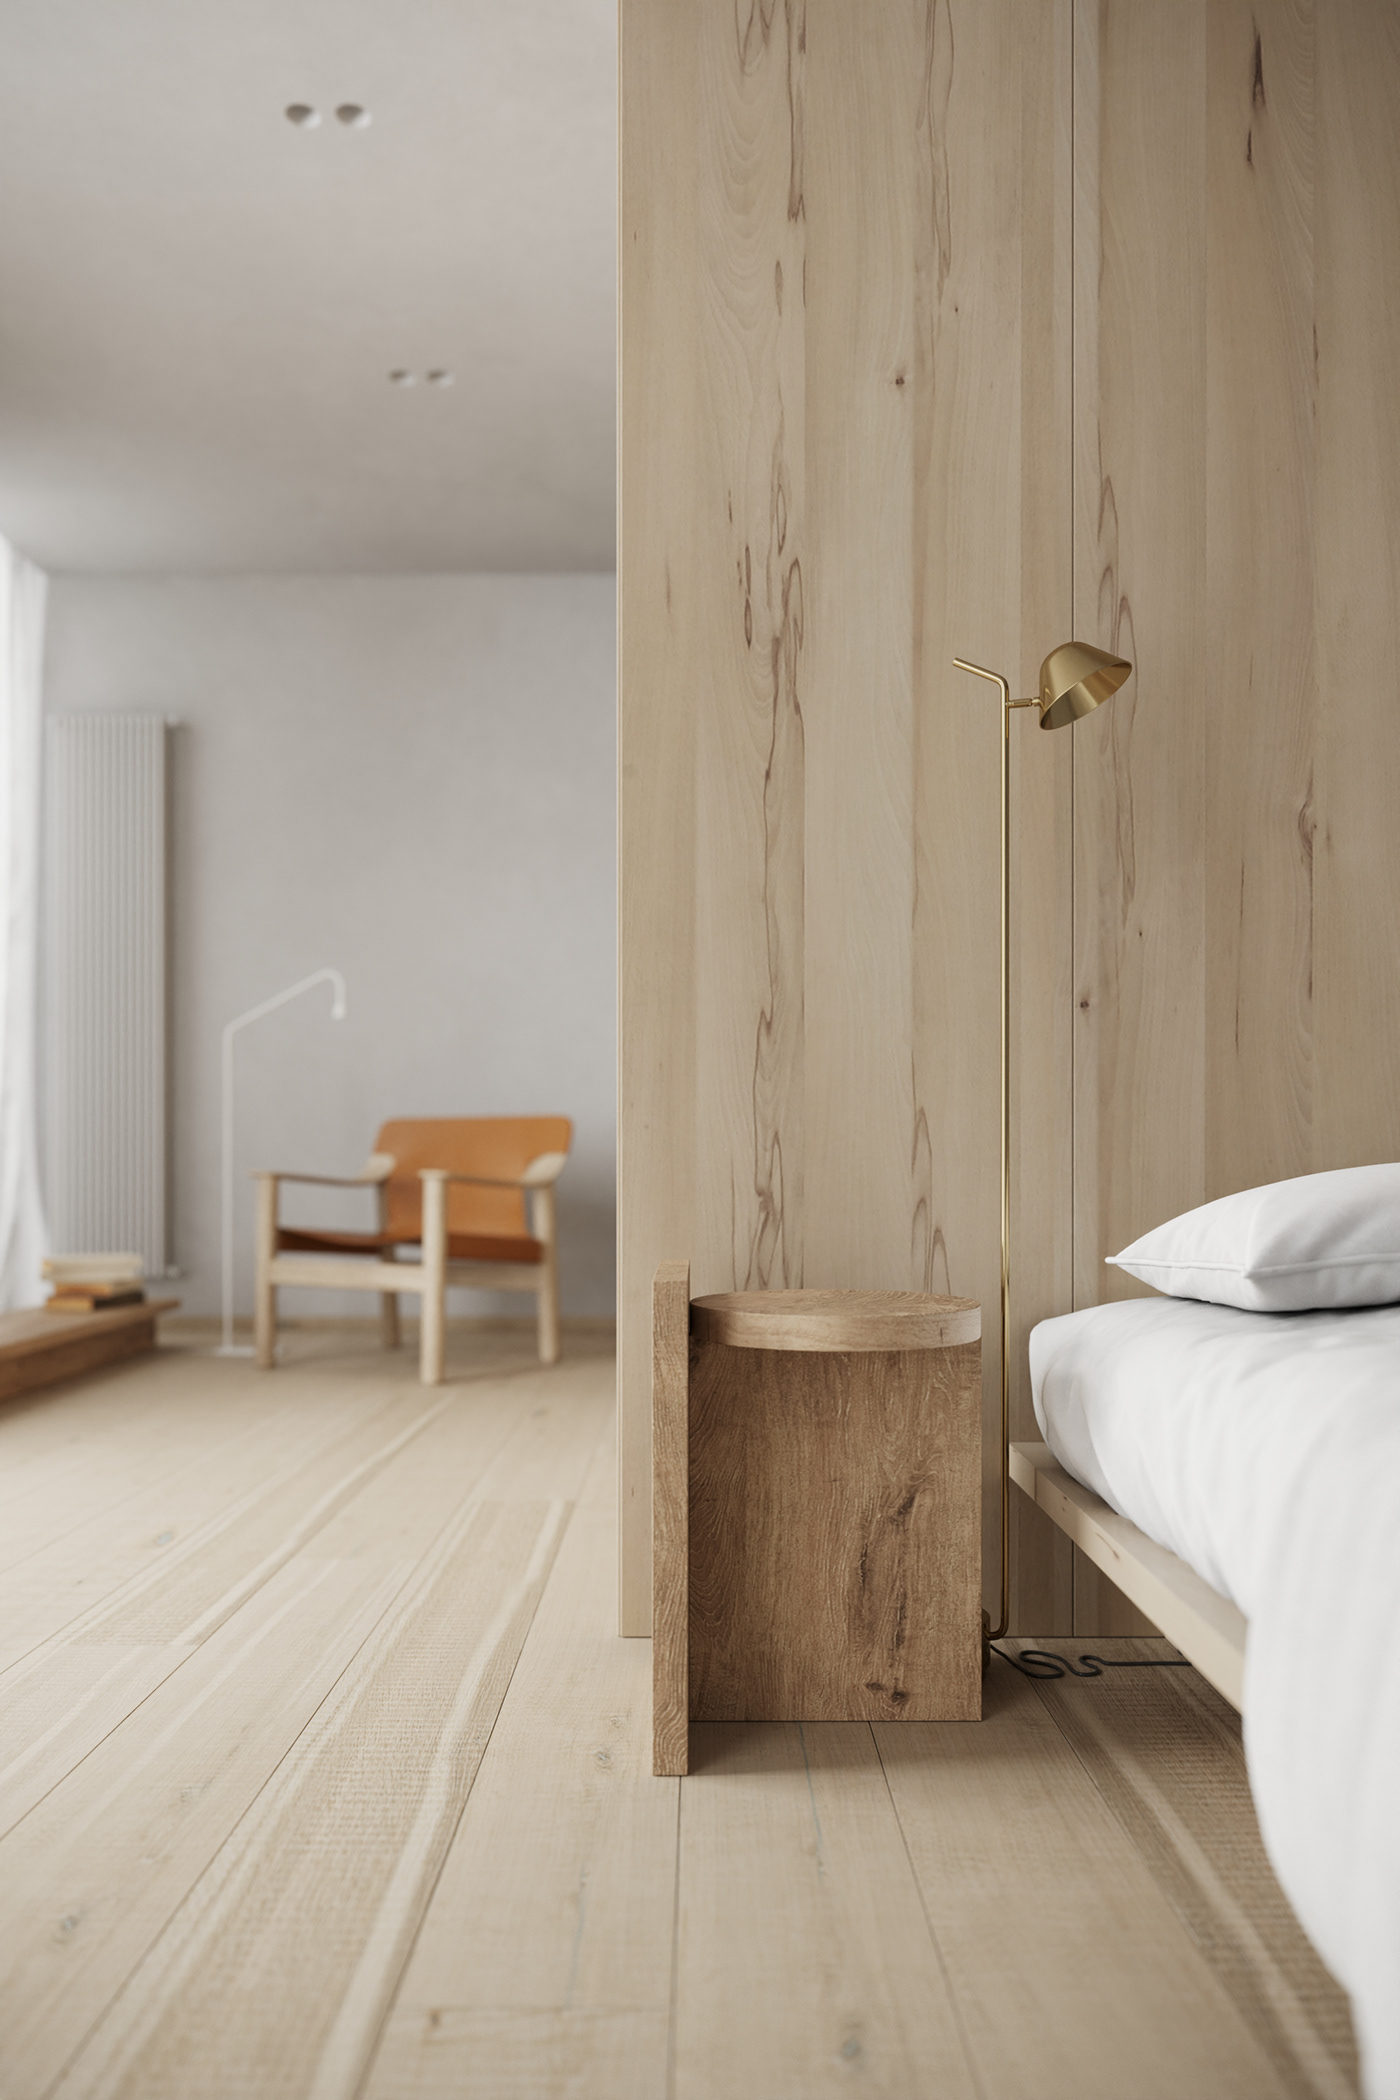 armchair bedroom bedroomdesign DesignConcept inspiring Interior interiordesign Render renderlovers visualization